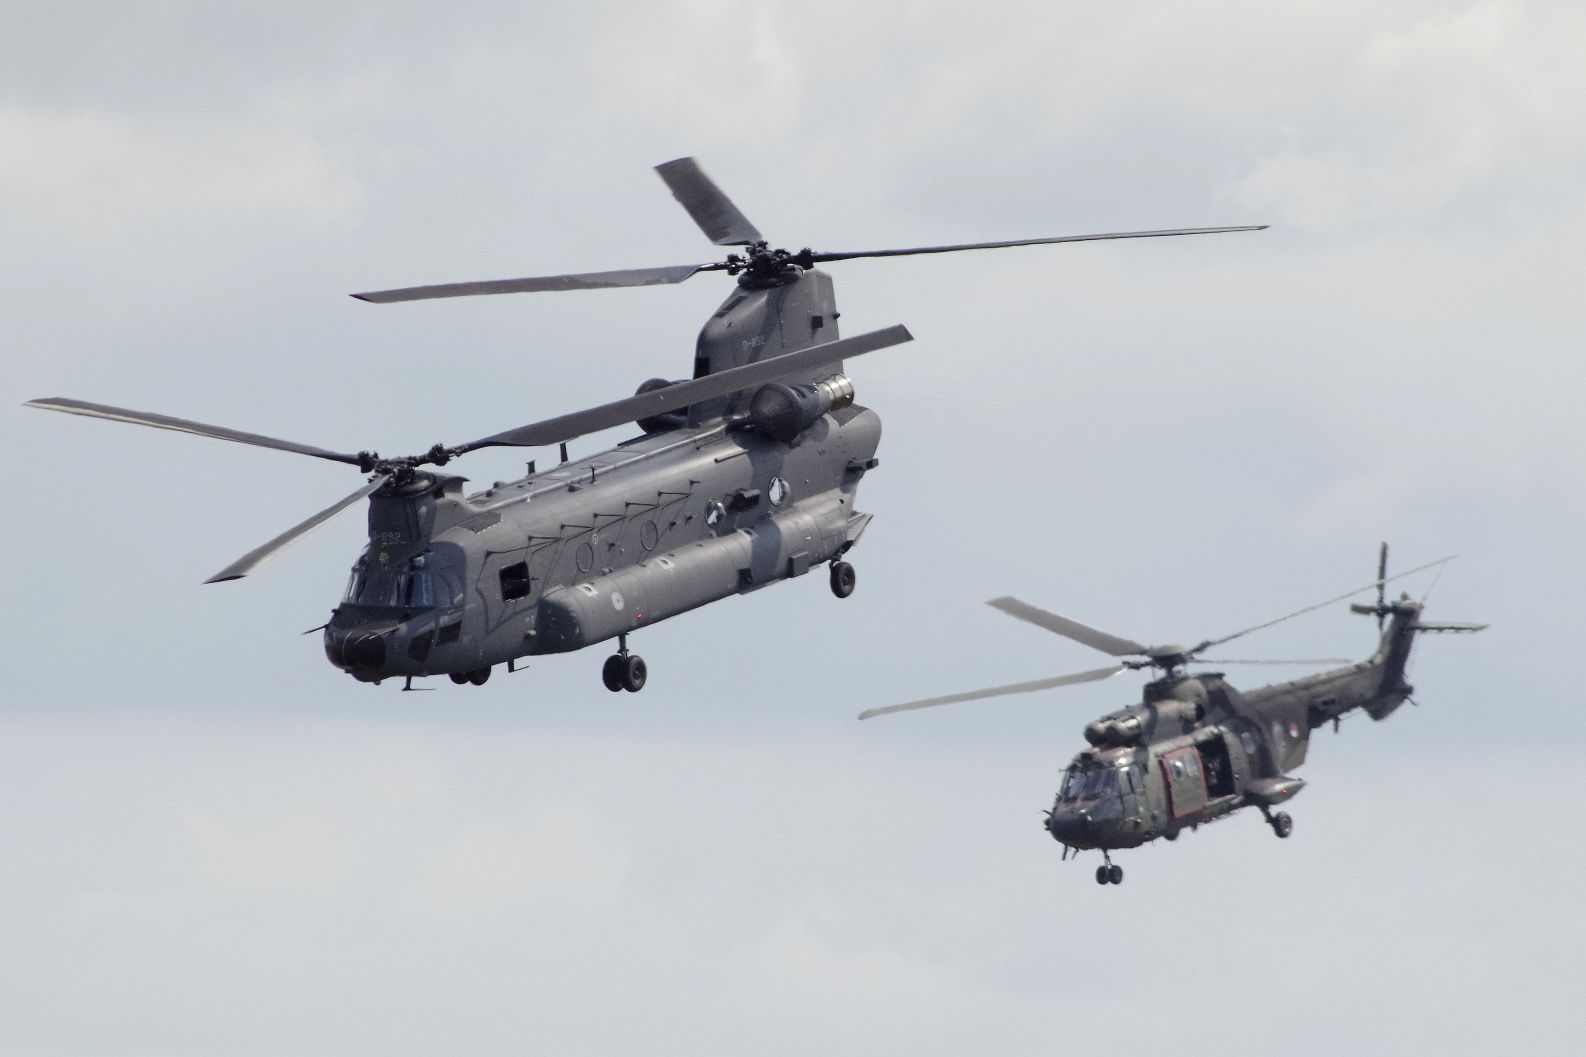 Helikopterek közös bevetésen (Chinook és Cougar)